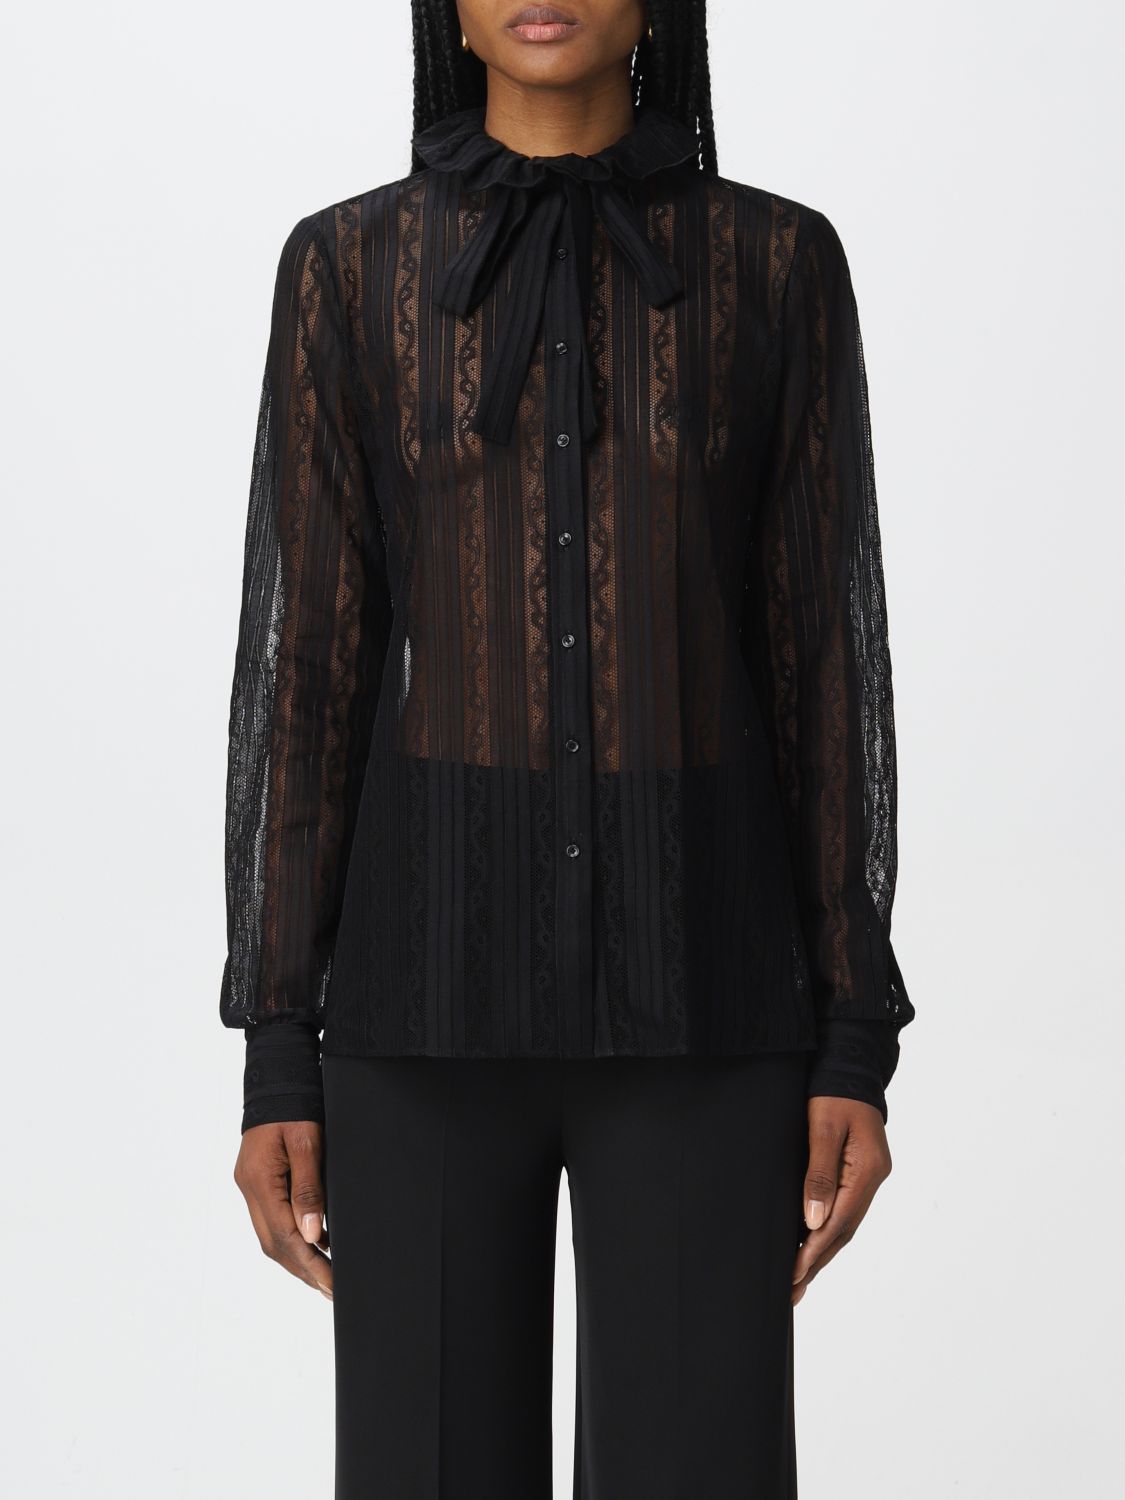 SAINT LAURENT: veiled shirt - Black | Saint Laurent shirt 687377Y4E02 ...